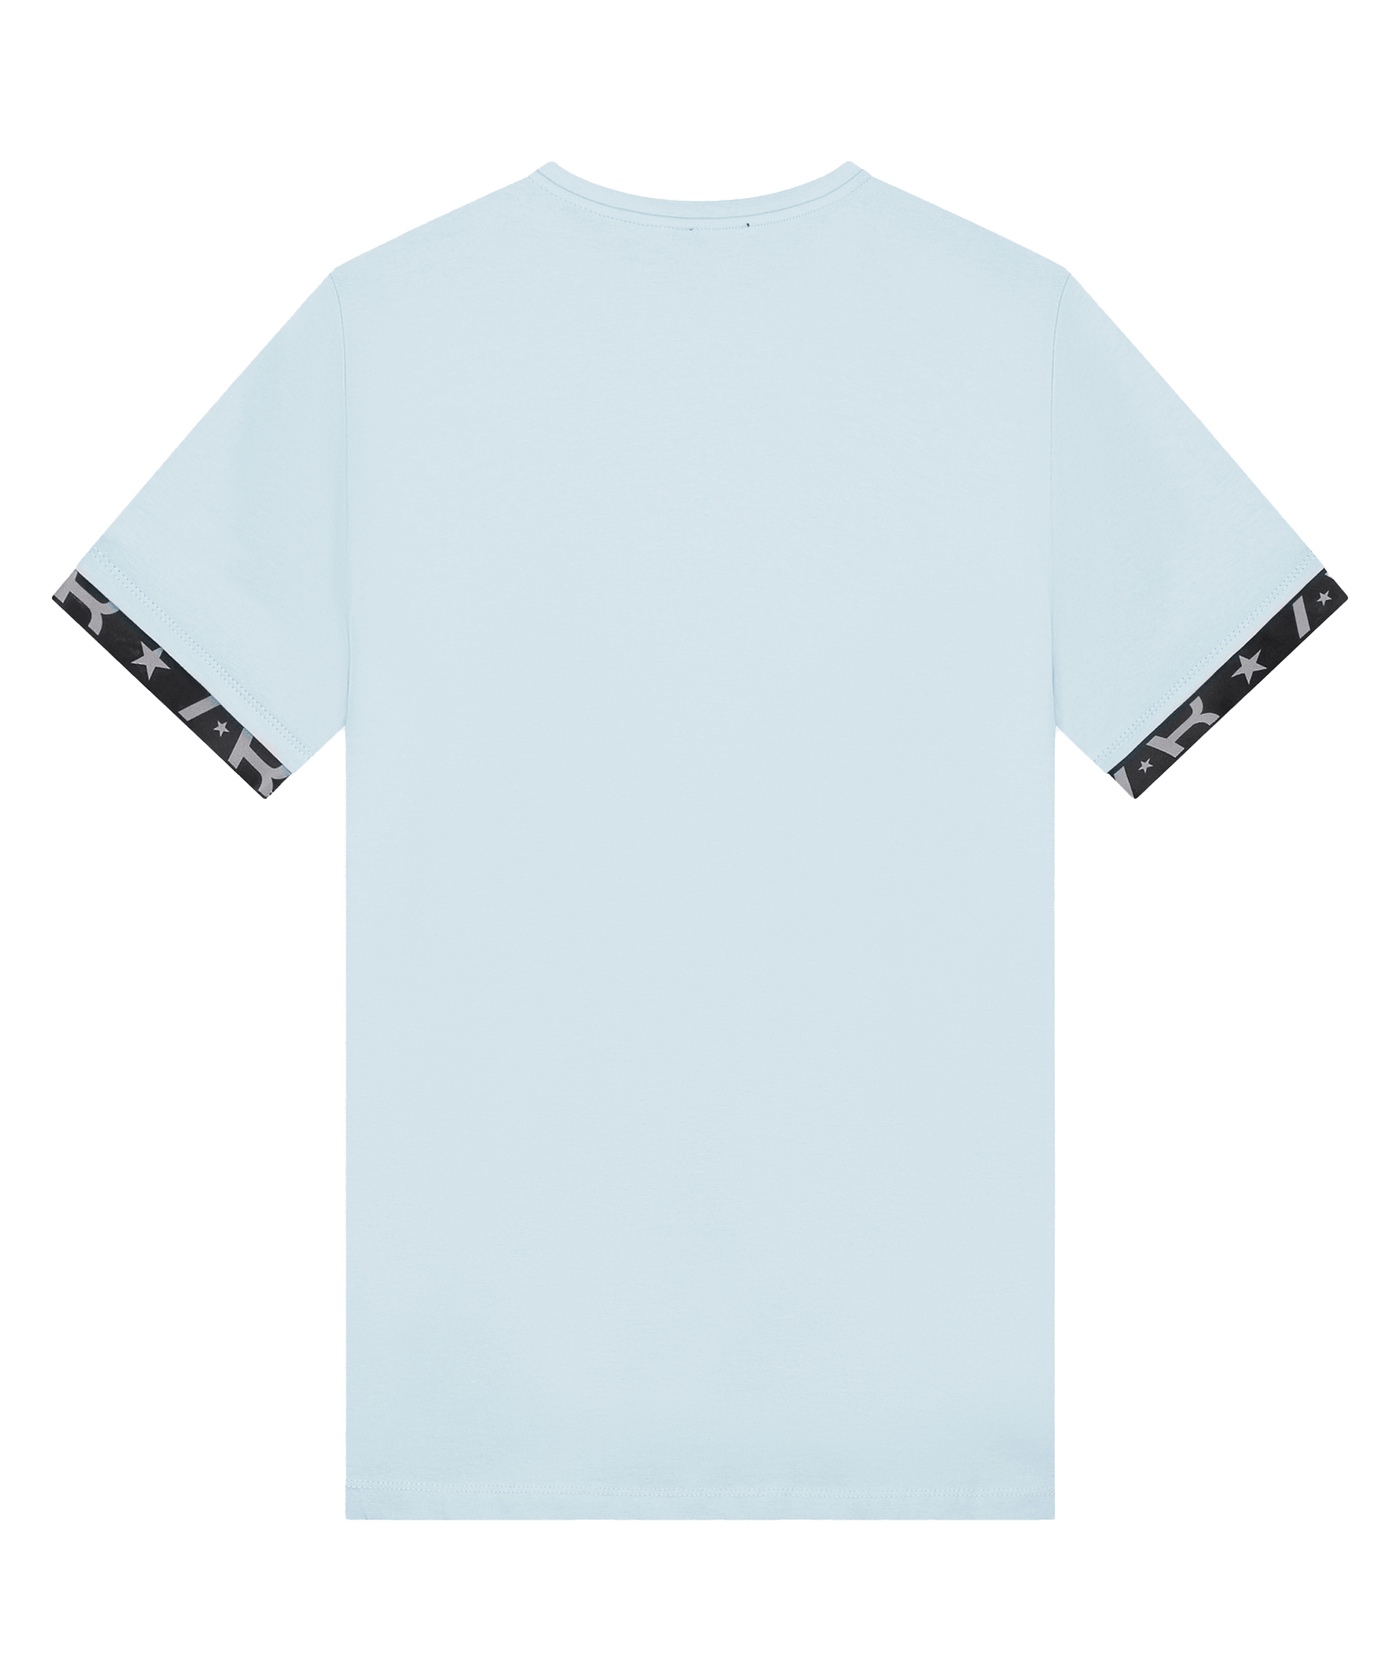 AB Lifestyle - Flag - T-shirt - Omphalodes